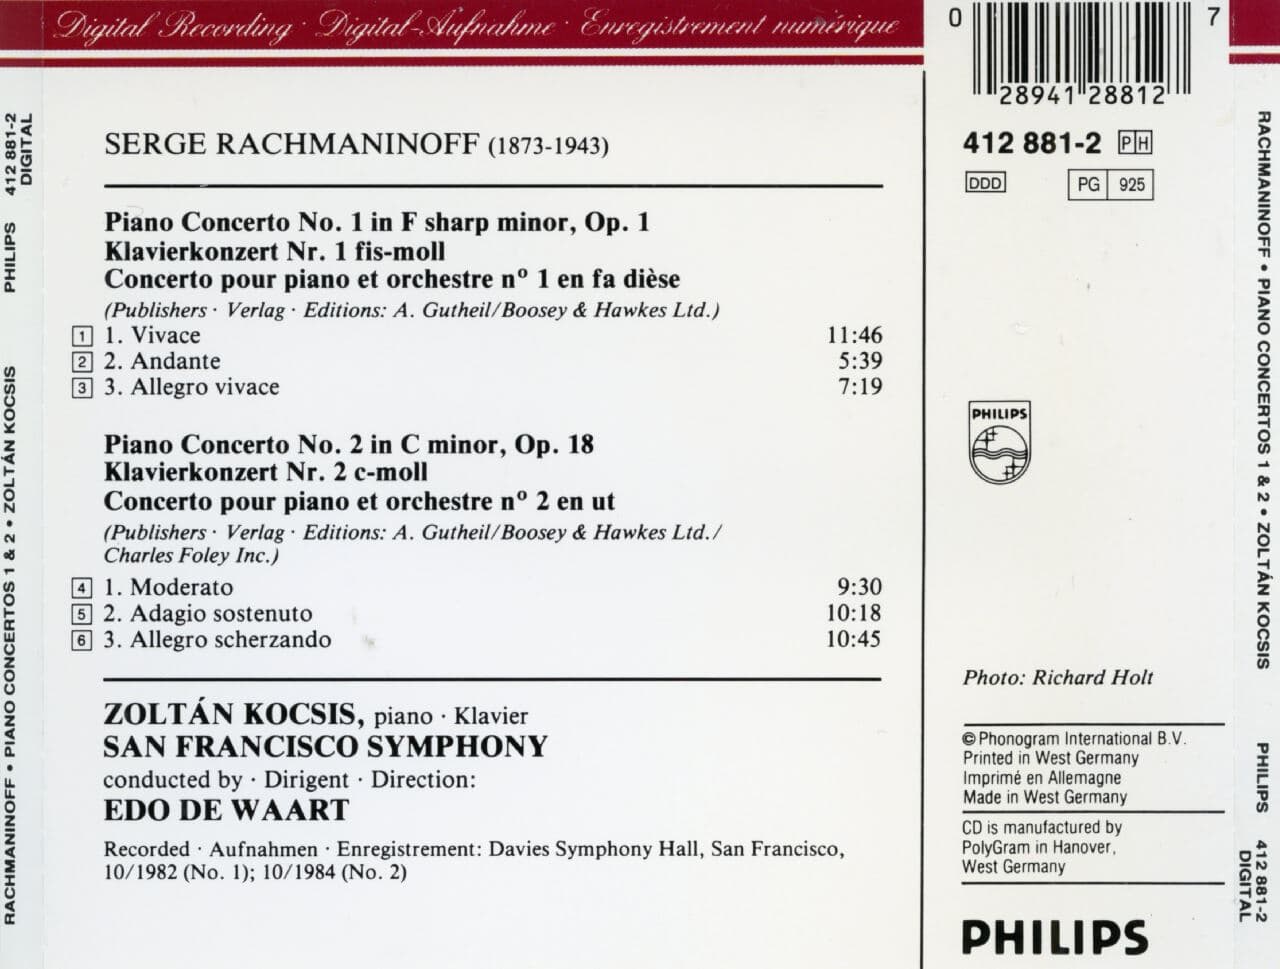 졸탄 코치슈 - Zoltan Kocsis - Rachmaninoff Piano Concertos 1 & 2 [서독발매]